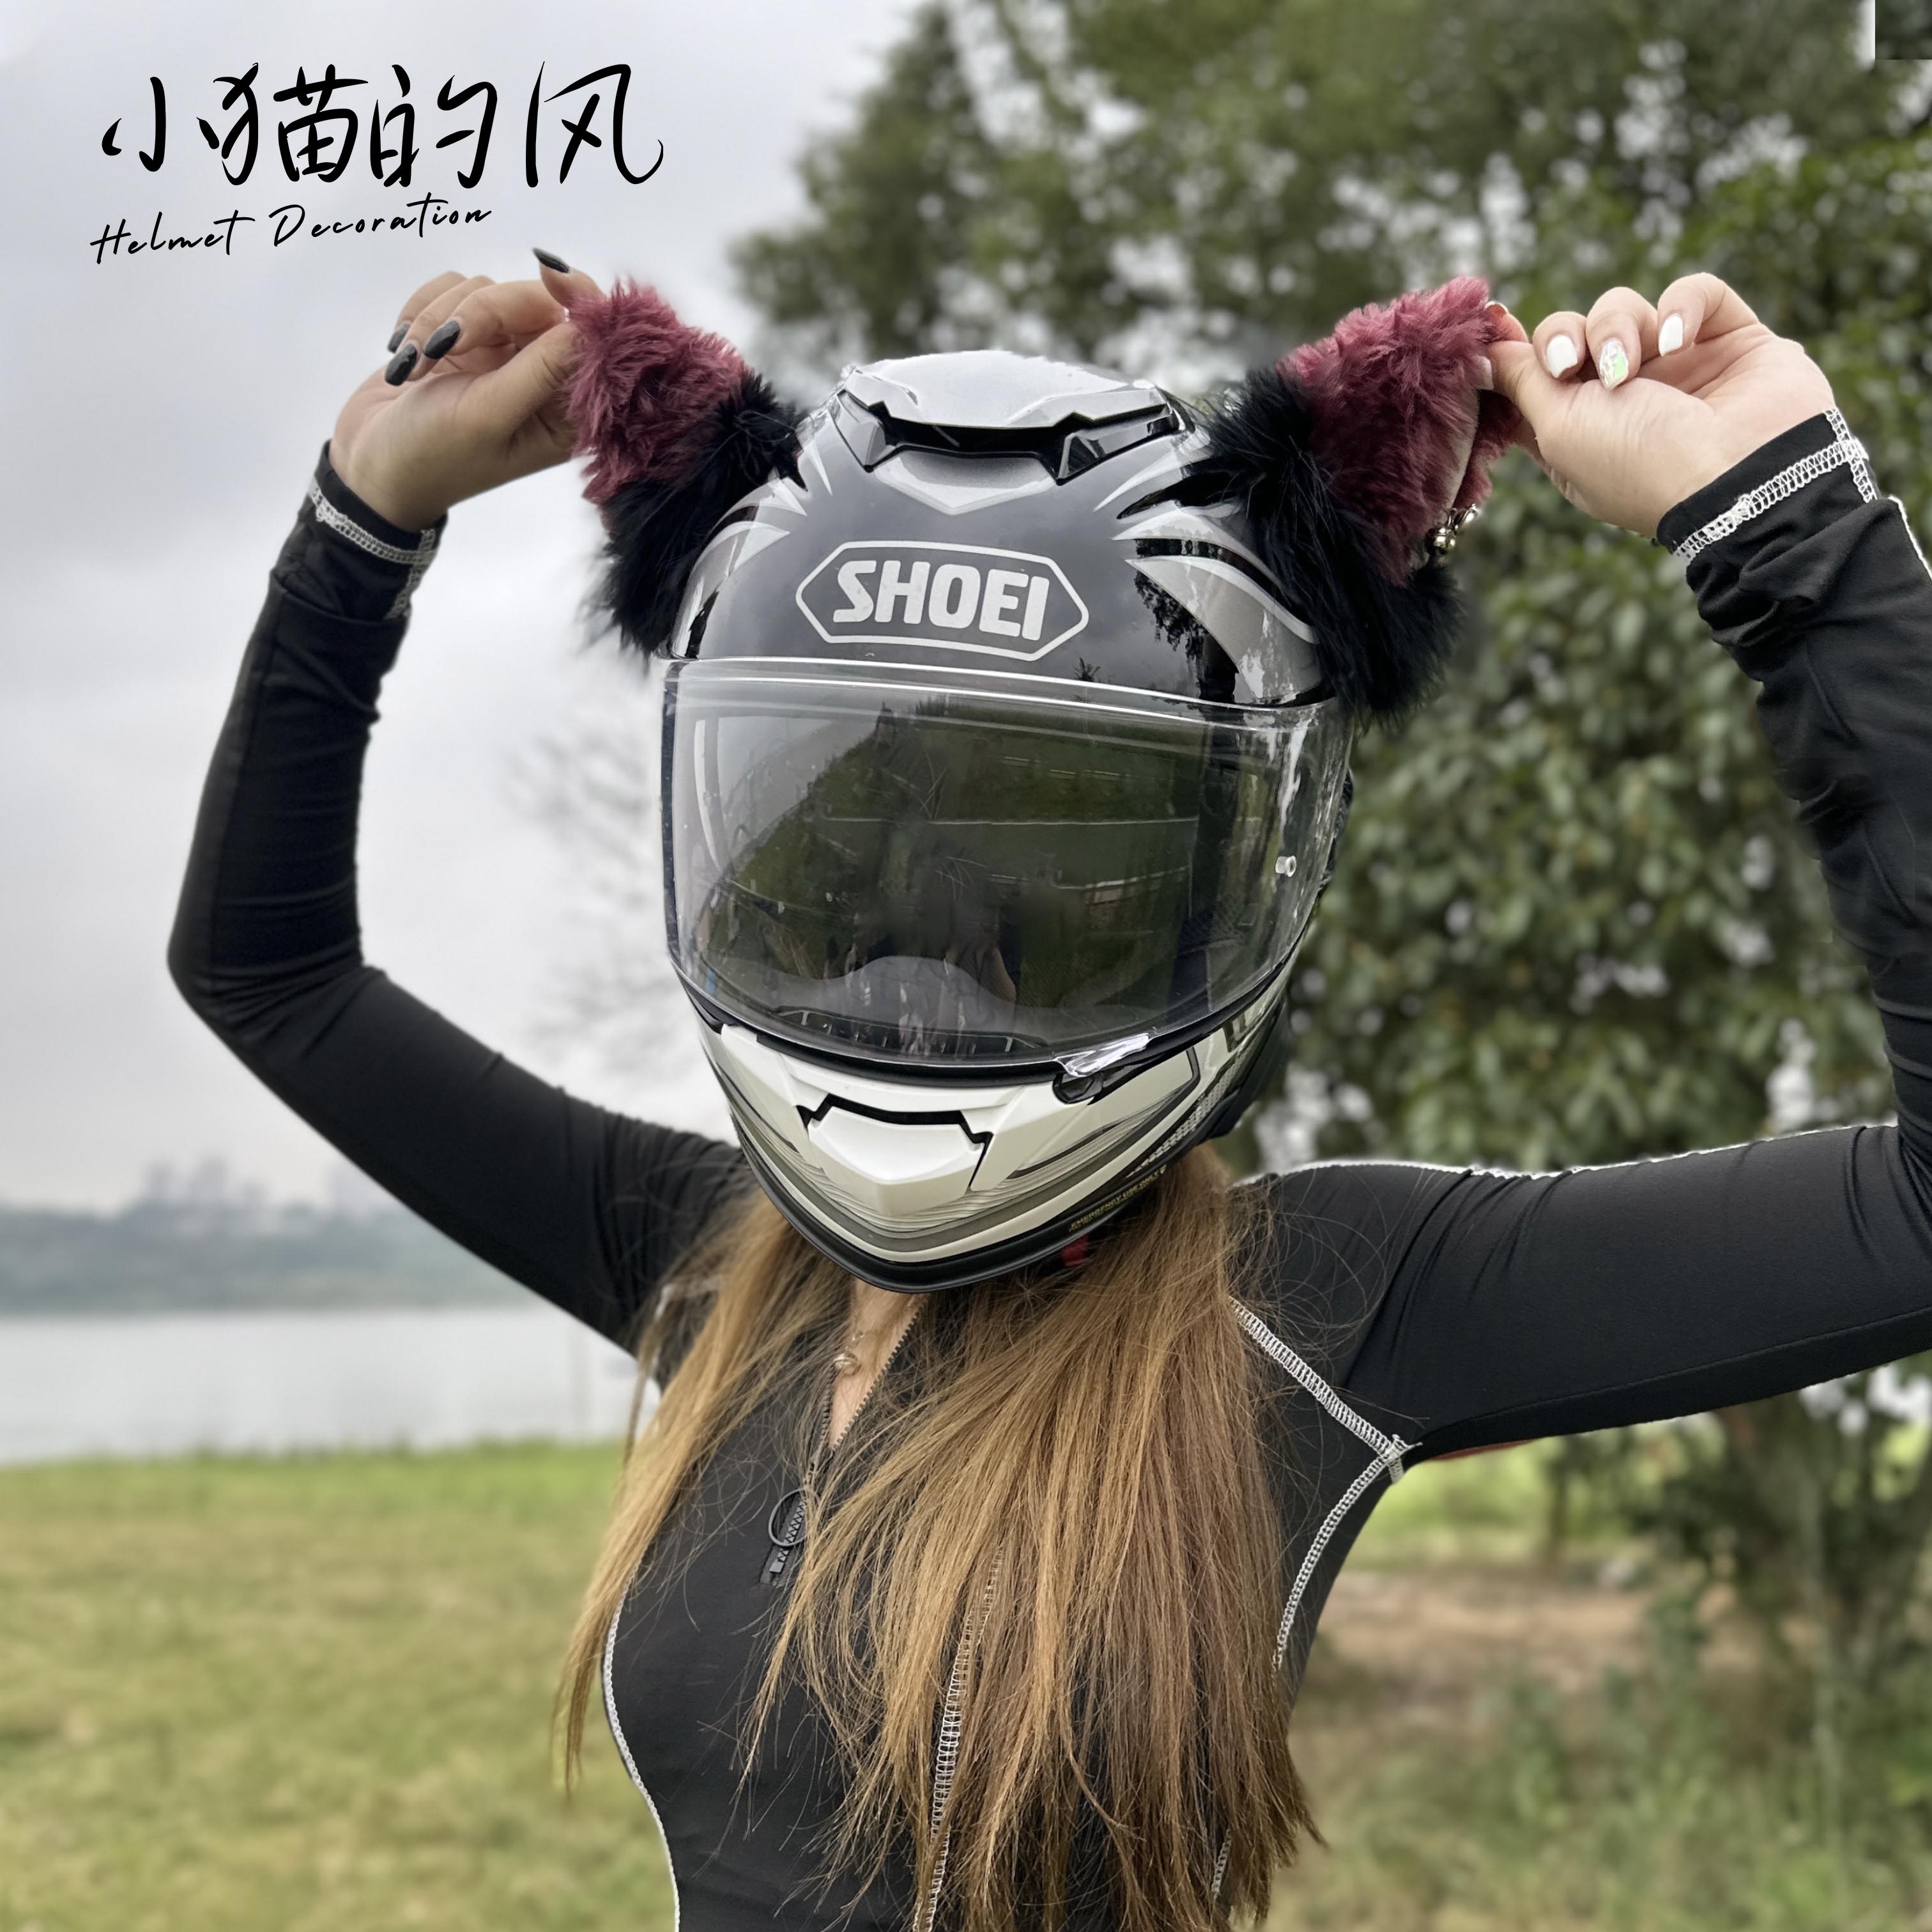 头盔装饰品黑红铃铛滑雪摩托车冰球电动车立体毛绒卡通耳朵可拆卸